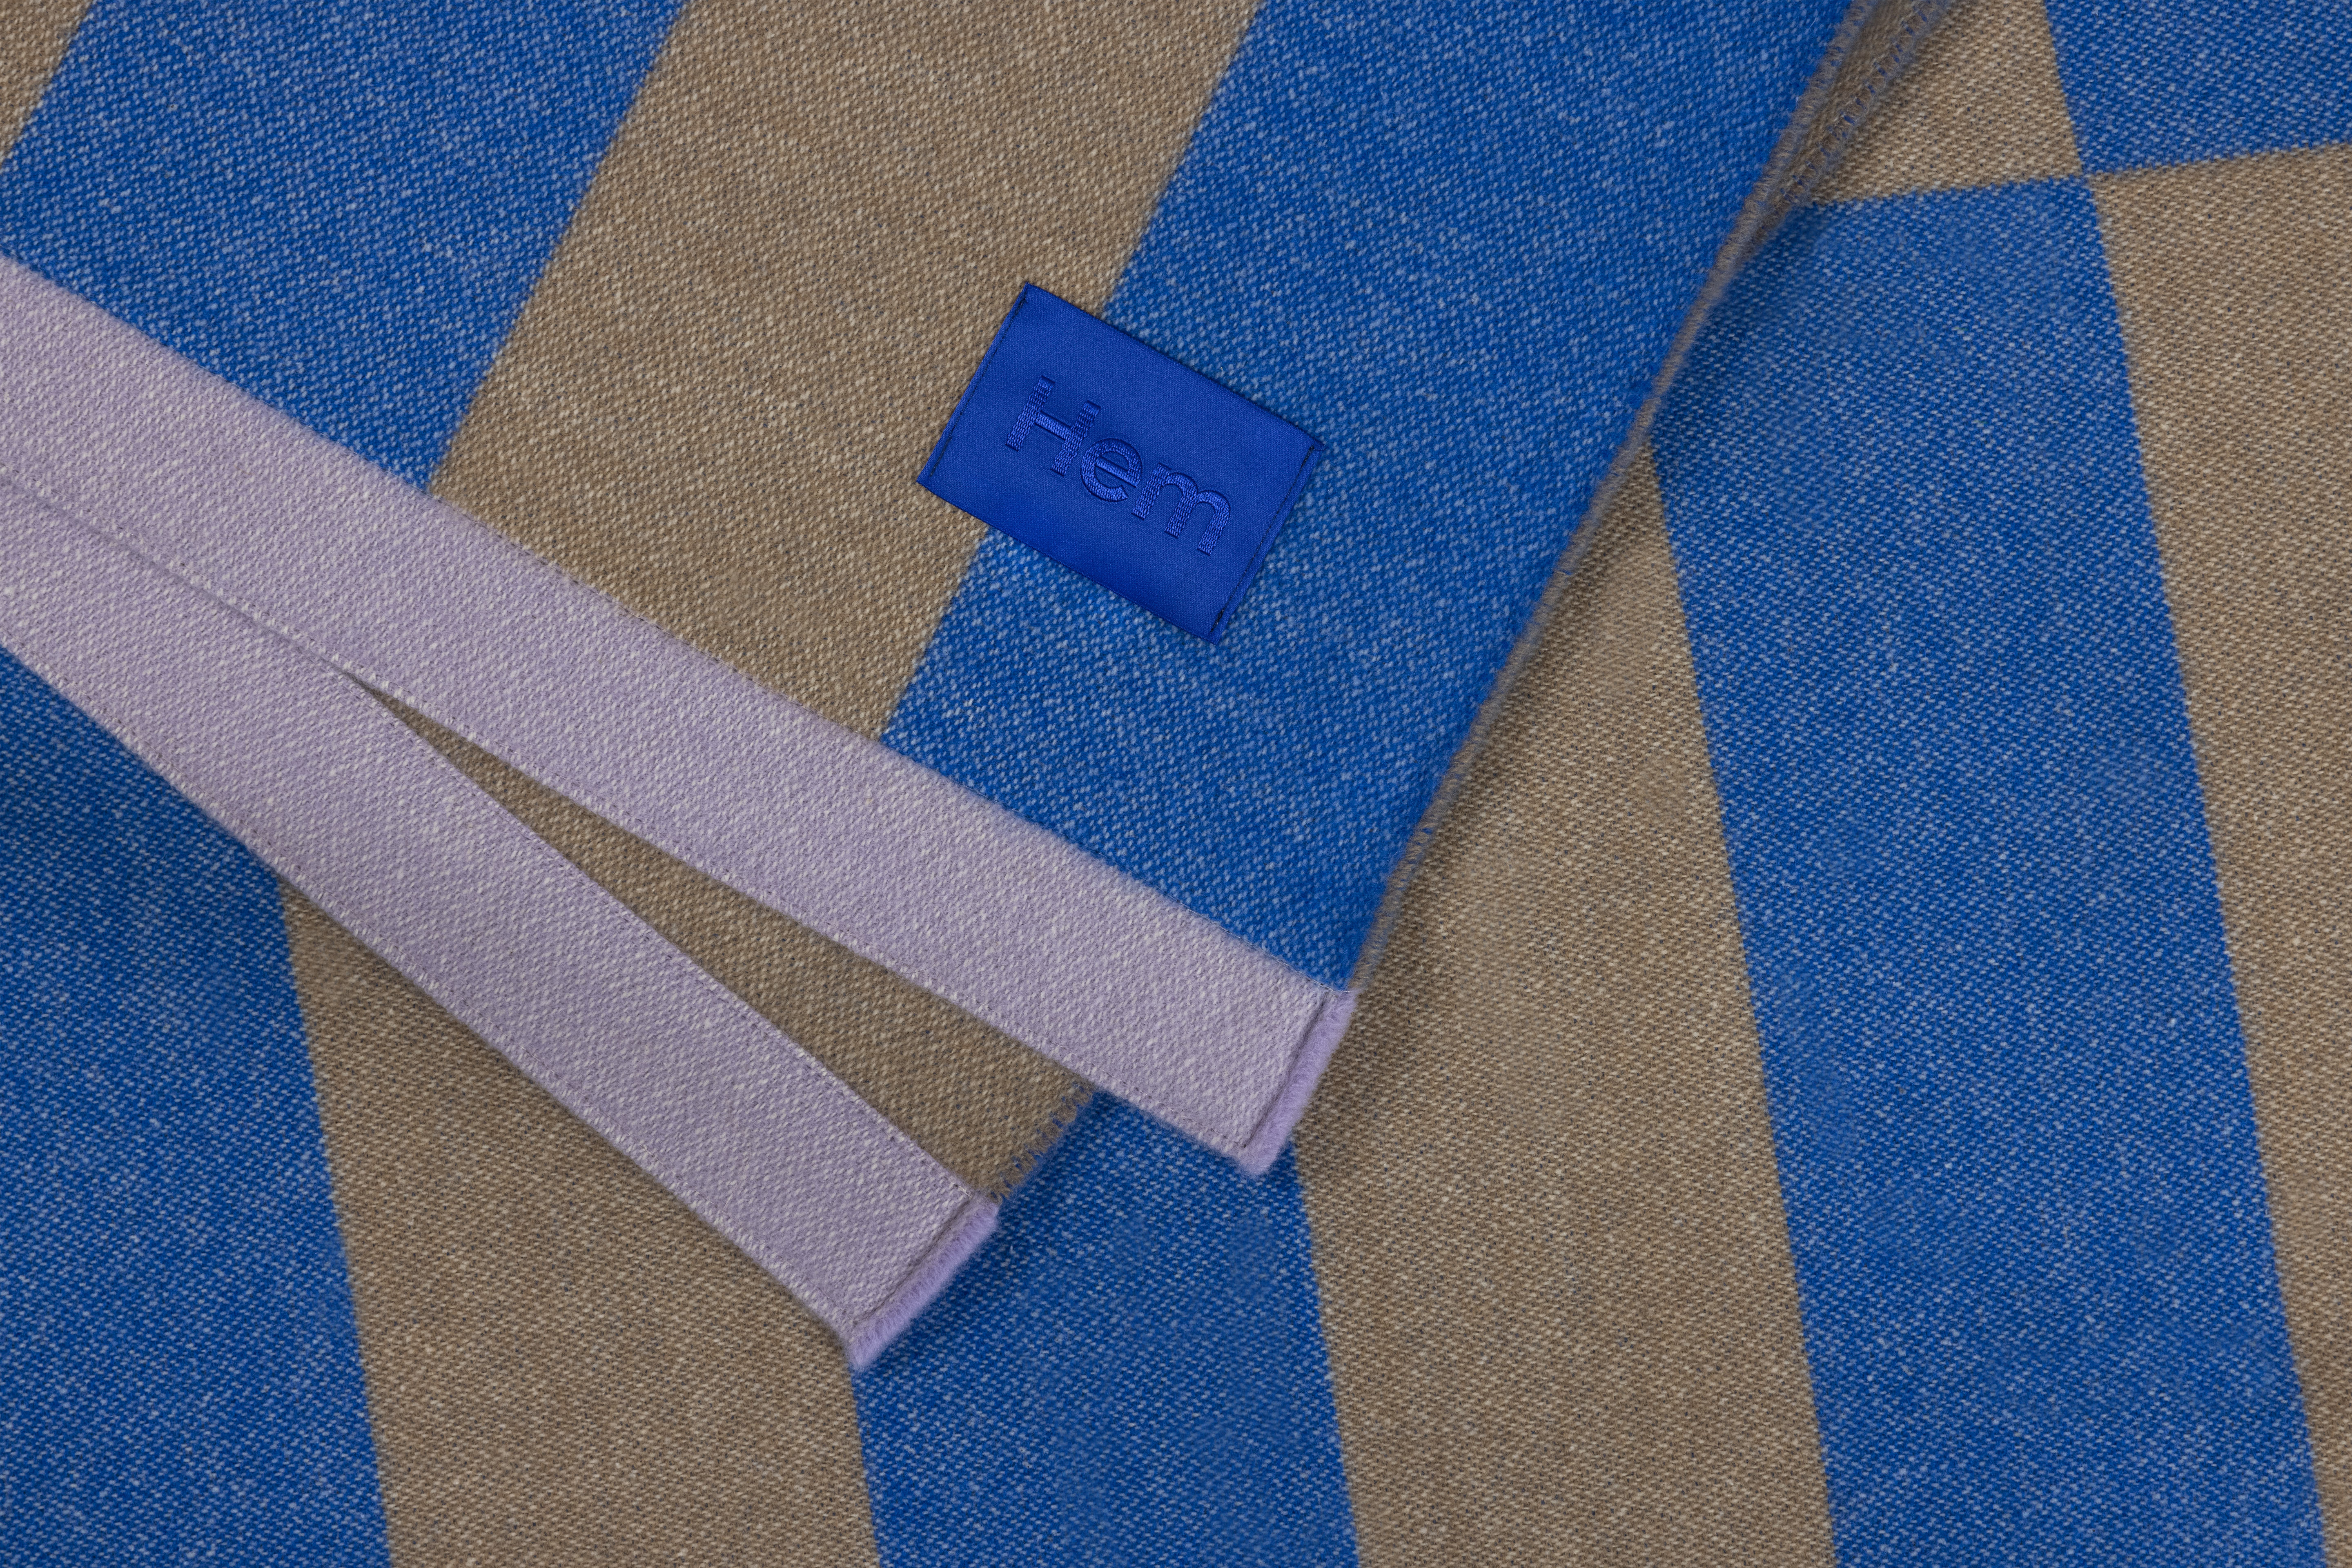 Stripe Throw, Blue / Beige, Art. no. 30540 (image 2)